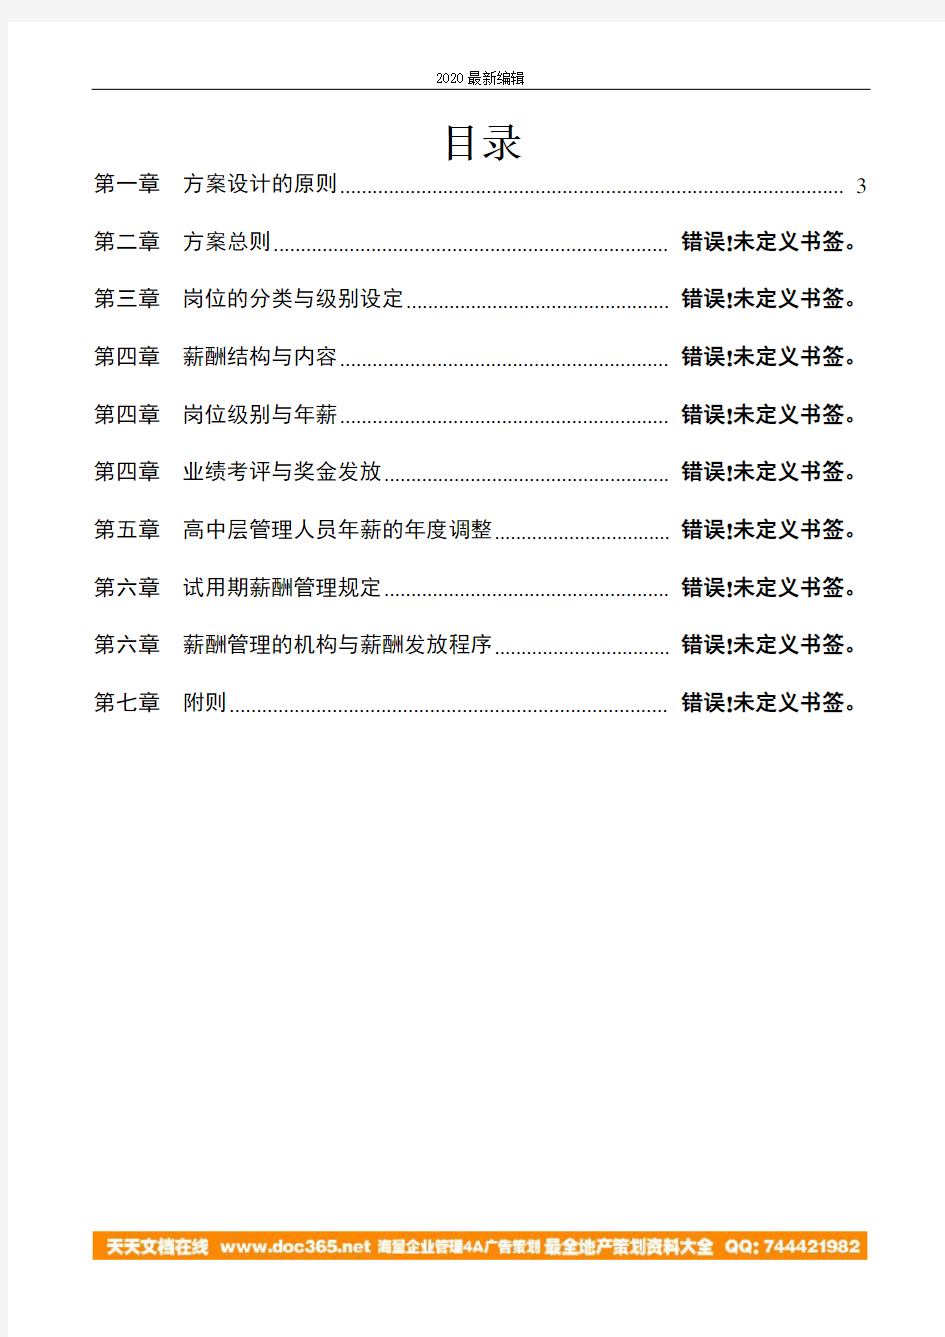 海问—广州杰赛—事业部总经理薪酬管理方案